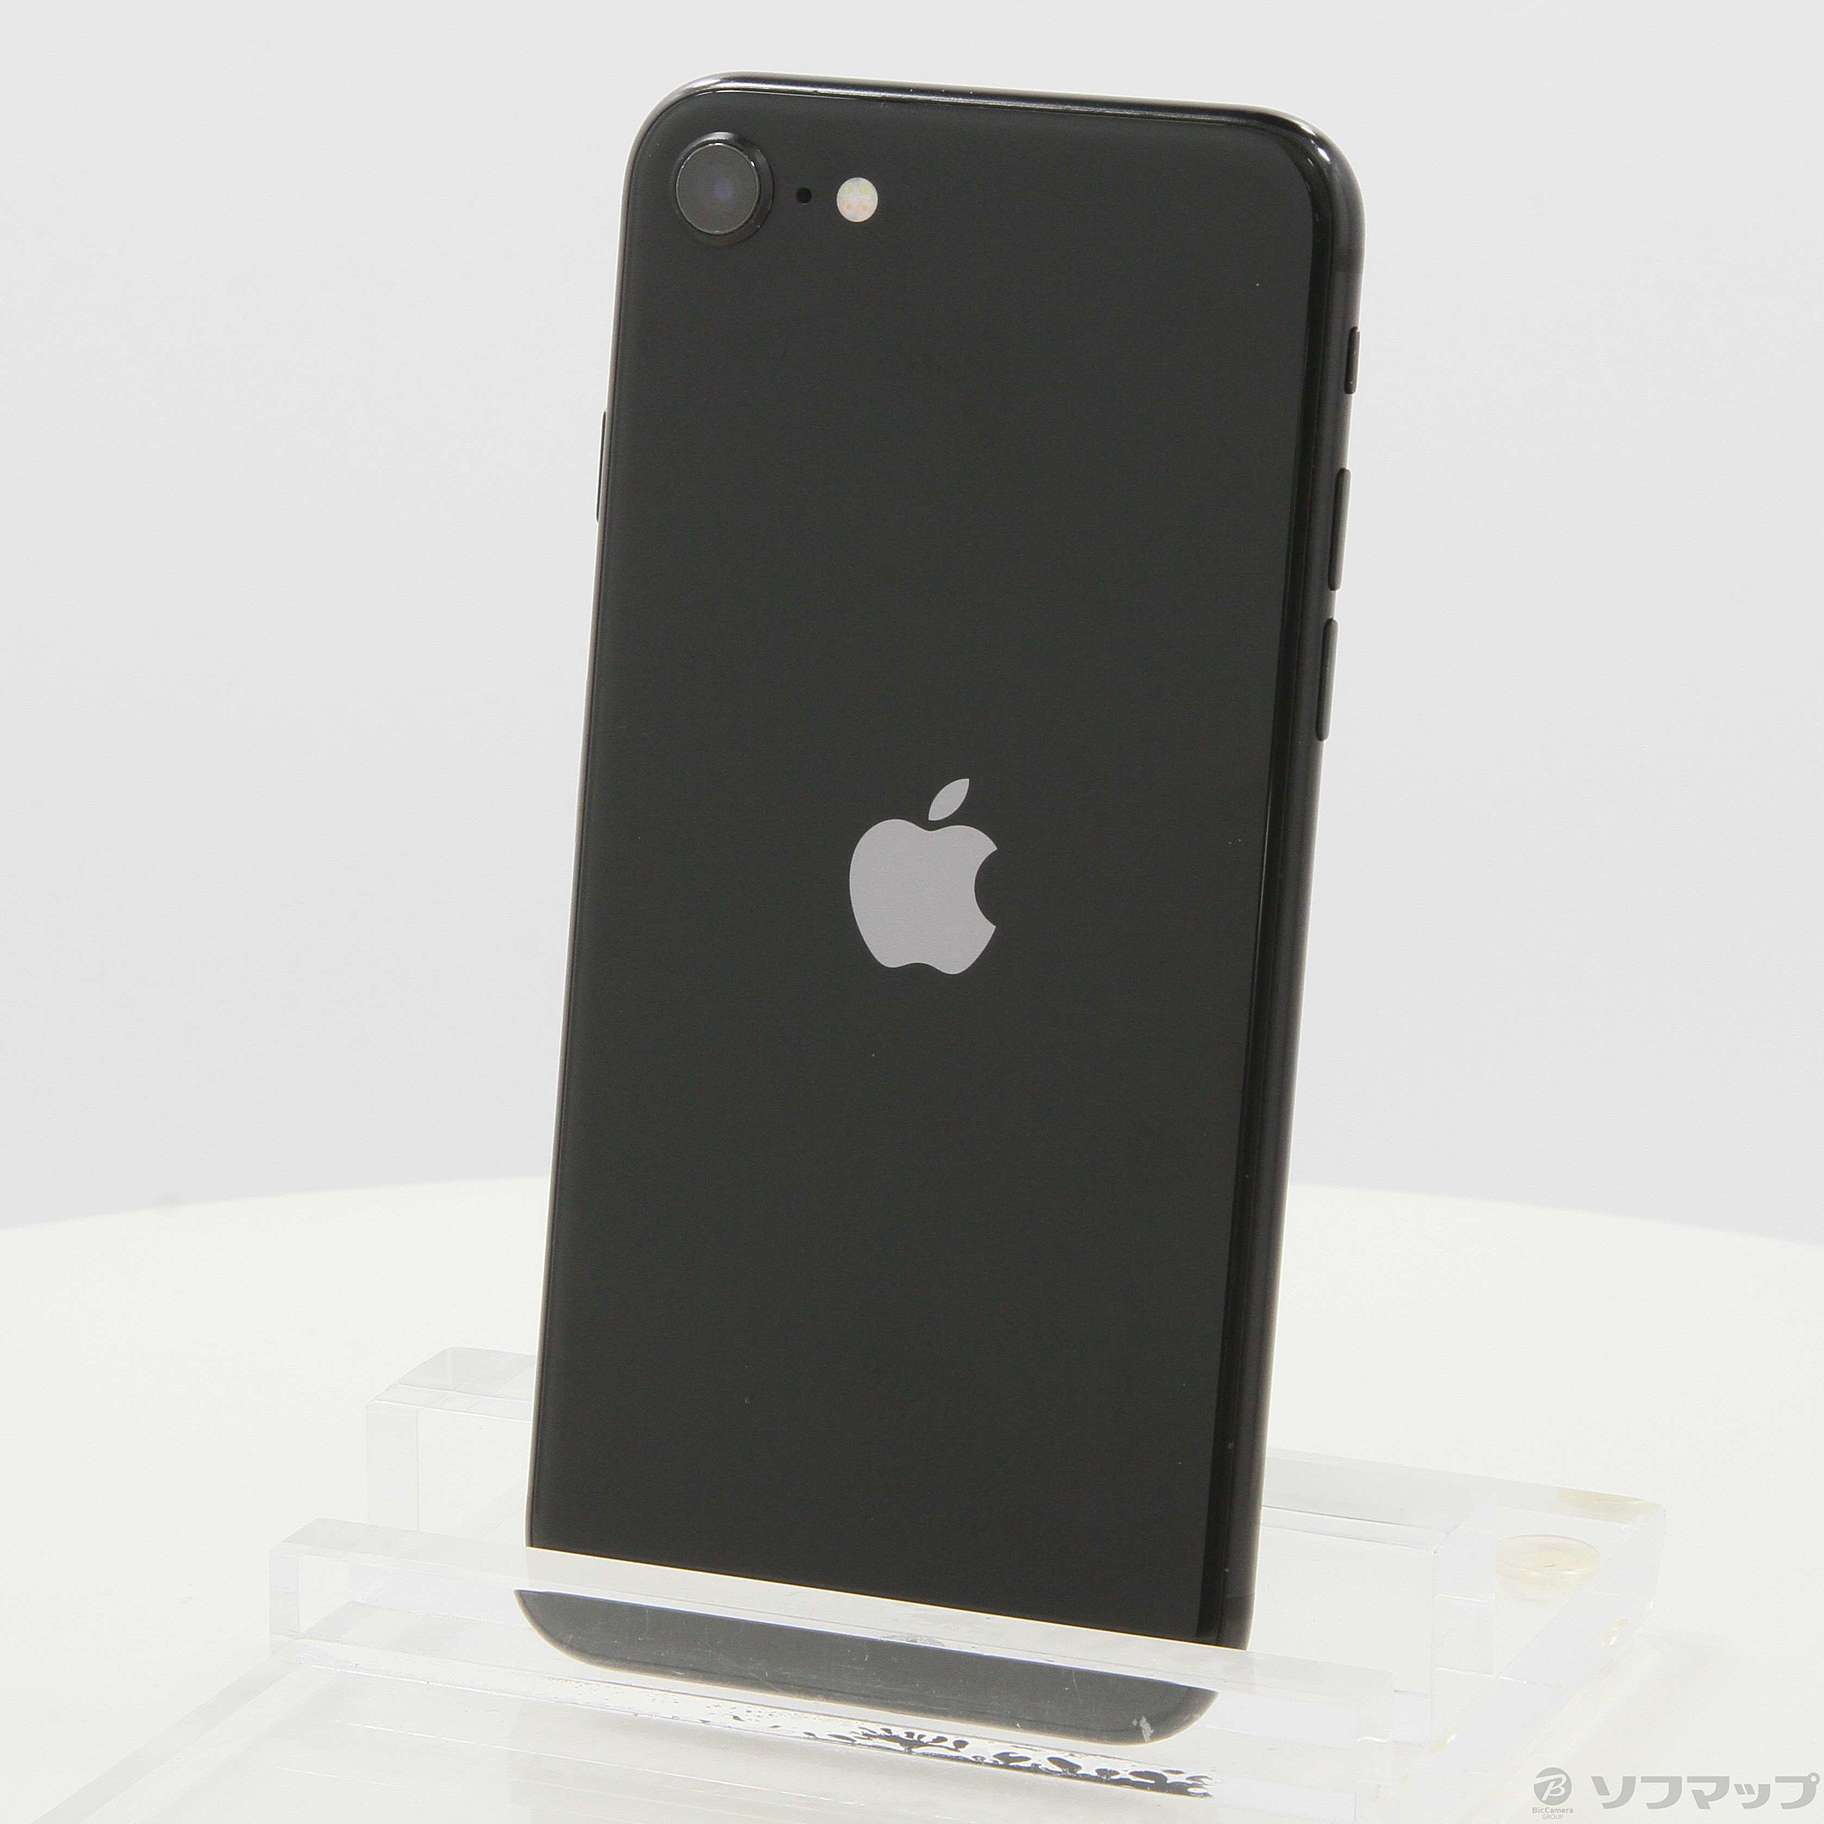 Apple iPhone SE 第2世代 64GB ブラック SIMフリー